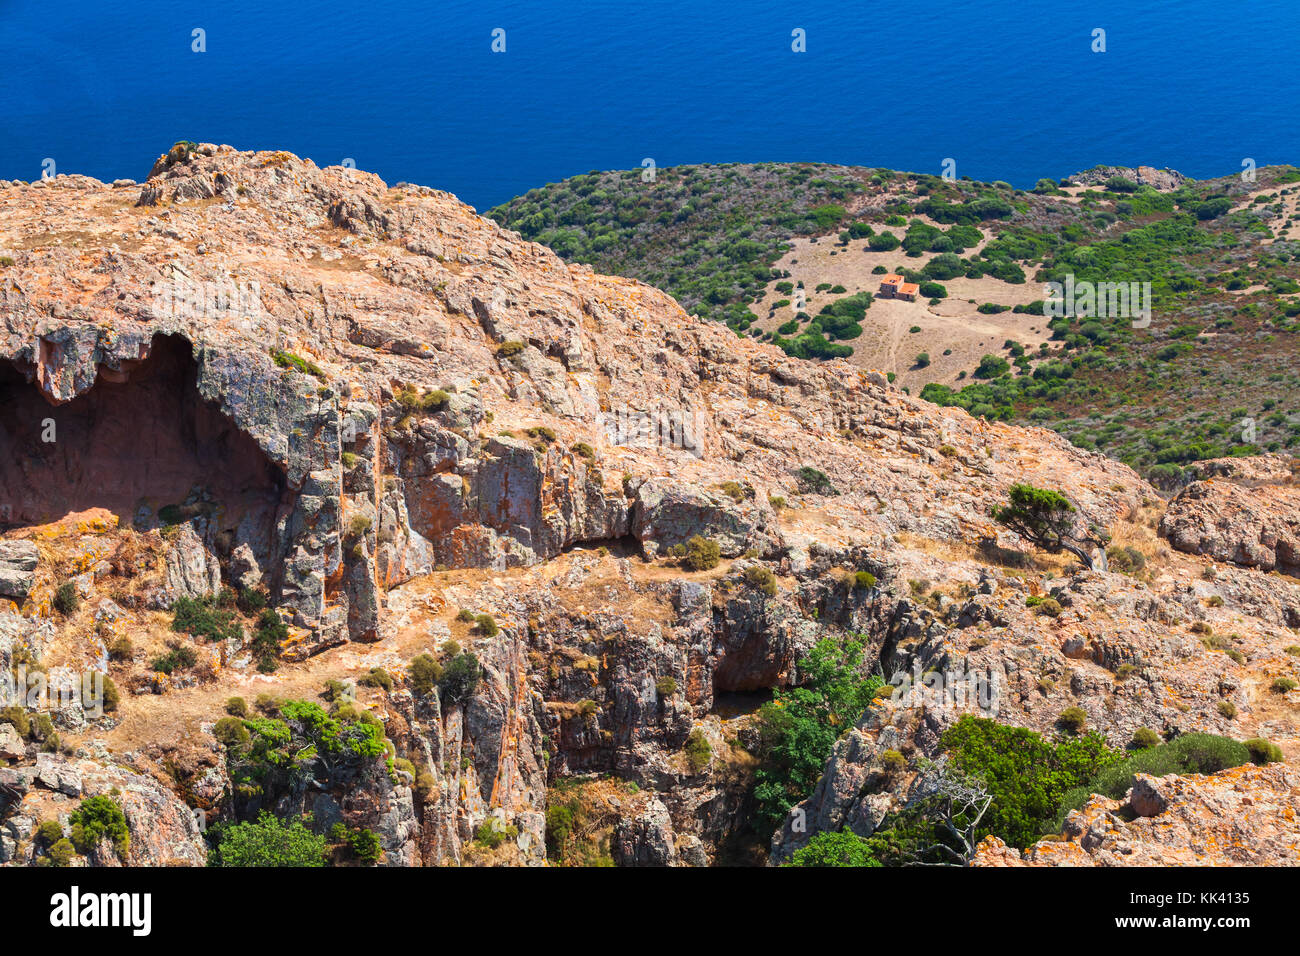 Corse-du-Sud Natur. südlichen Region der Insel Korsika, Frankreich. Landschaft von Piana Bezirk mit Grotte in den Rocky Mountains. Stockfoto